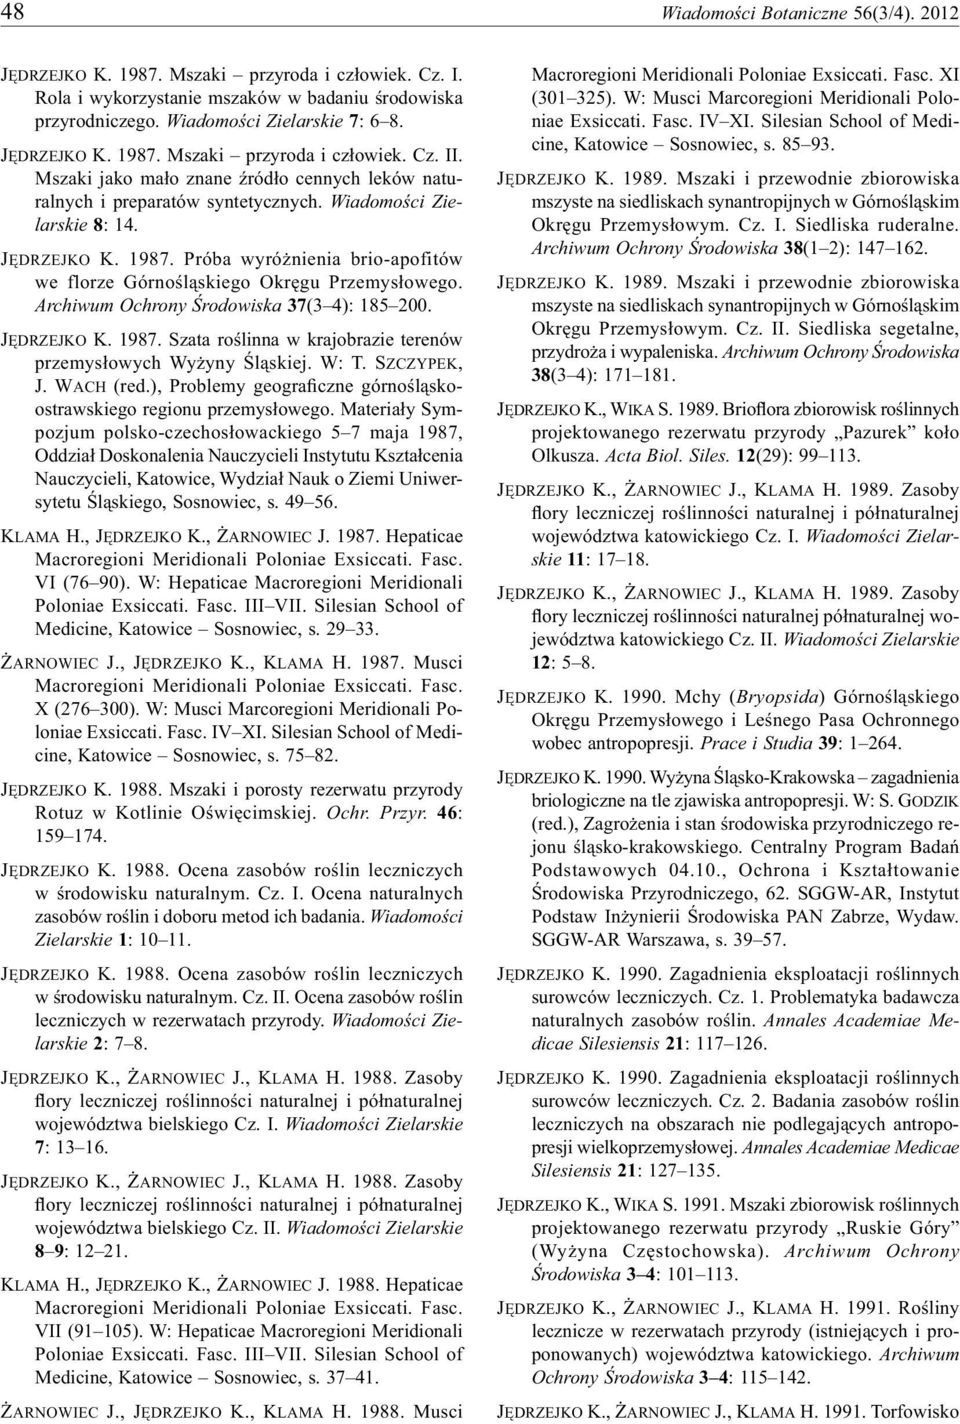 Archiwum Ochrony Środowiska 37(3 4): 185 200. JĘDRZEJKO K. 1987. Szata roślinna w krajobrazie terenów przemysłowych Wyżyny Śląskiej. W: T. SZCZYPEK, J. WACH (red.